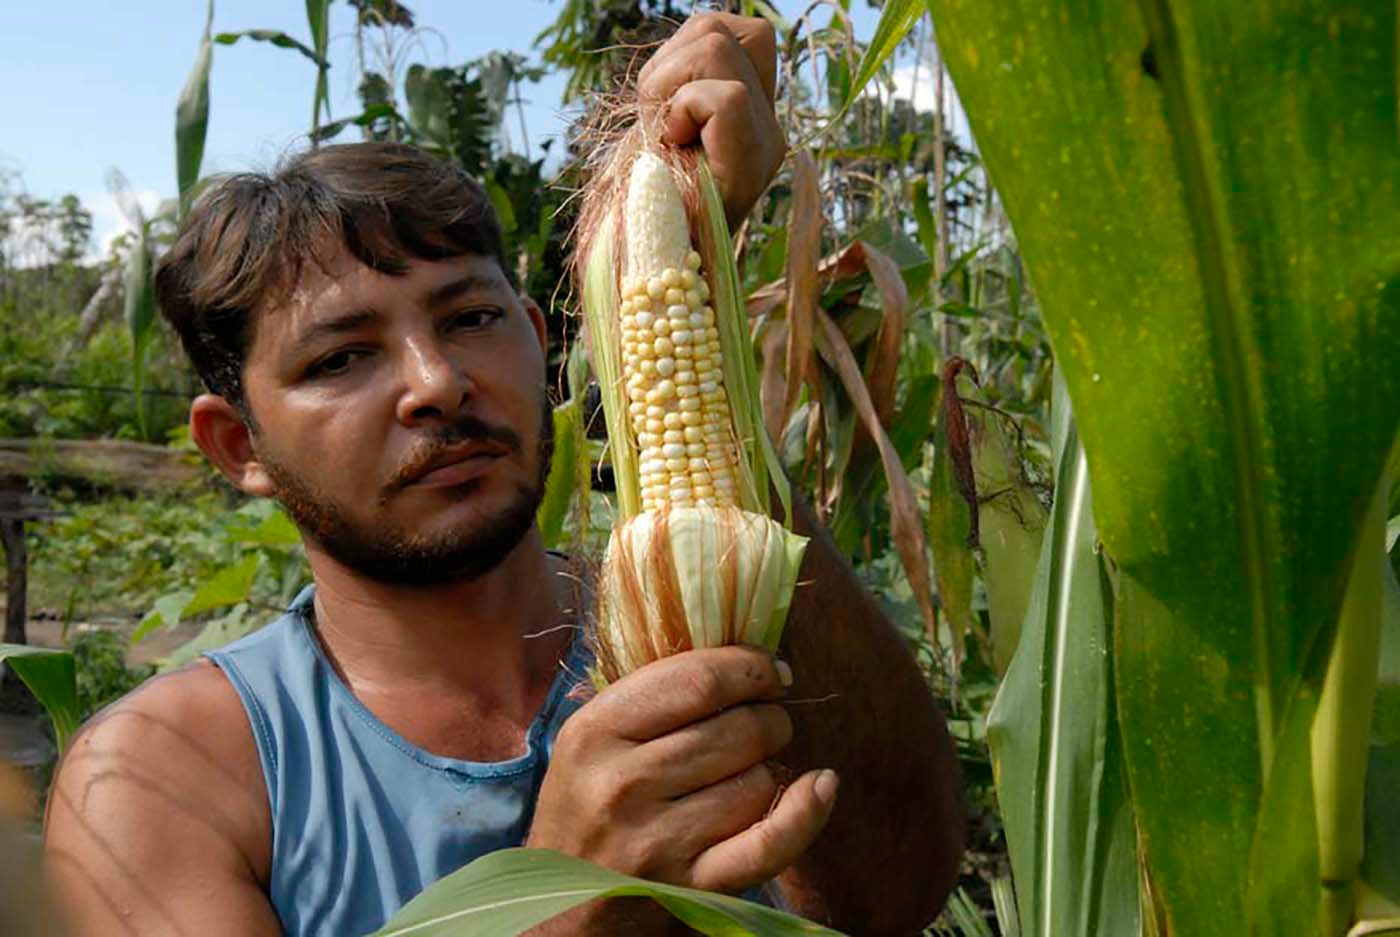 Les petits agriculteurs d'Amazonie sont particulièrement menacés. (Photo: J. C. Gerez)